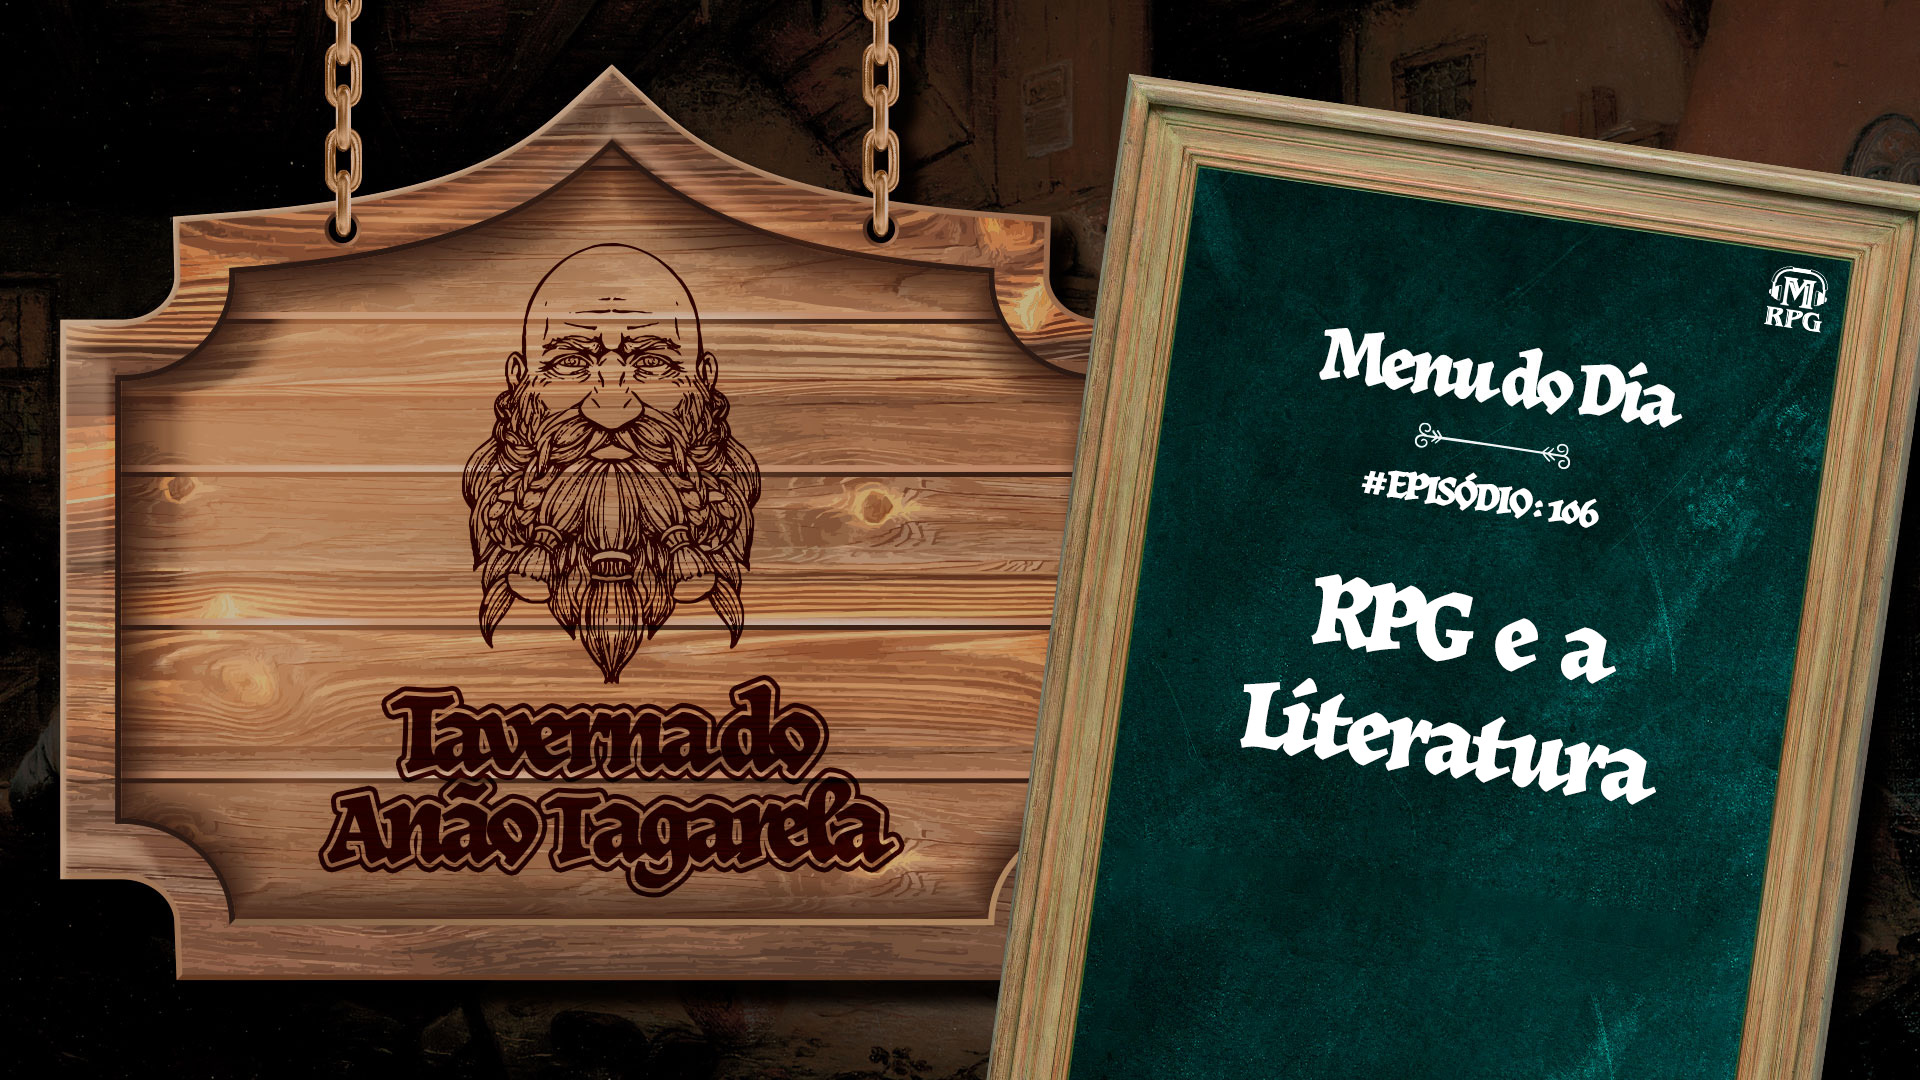 RPG e a Literatura - Taverna do Anão Tagarela #106